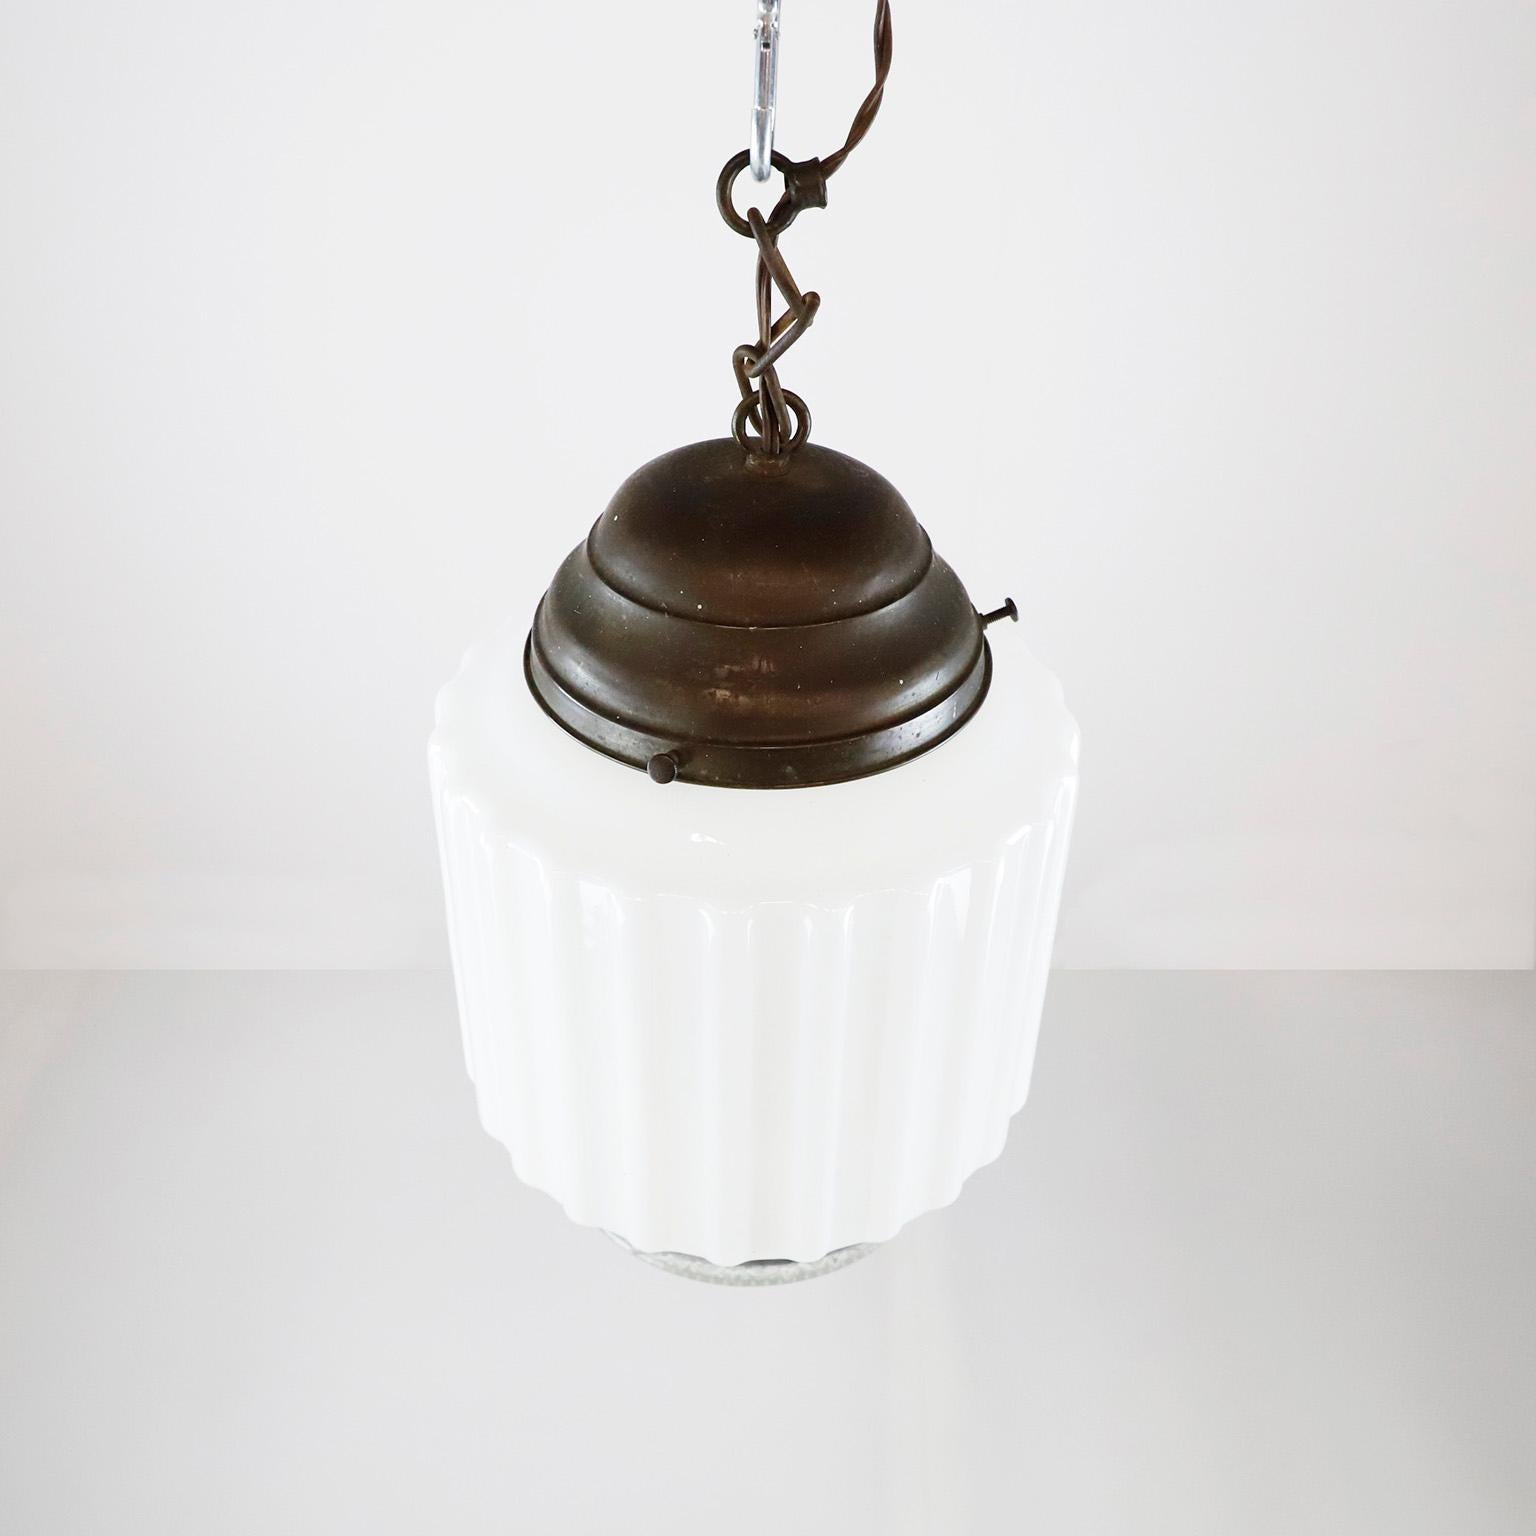 Circa 1930. Nous vous proposons cette lampe suspendue Art déco avec un abat-jour cylindrique en verre au lait strié et en verre taillé. Excellent état de conservation.